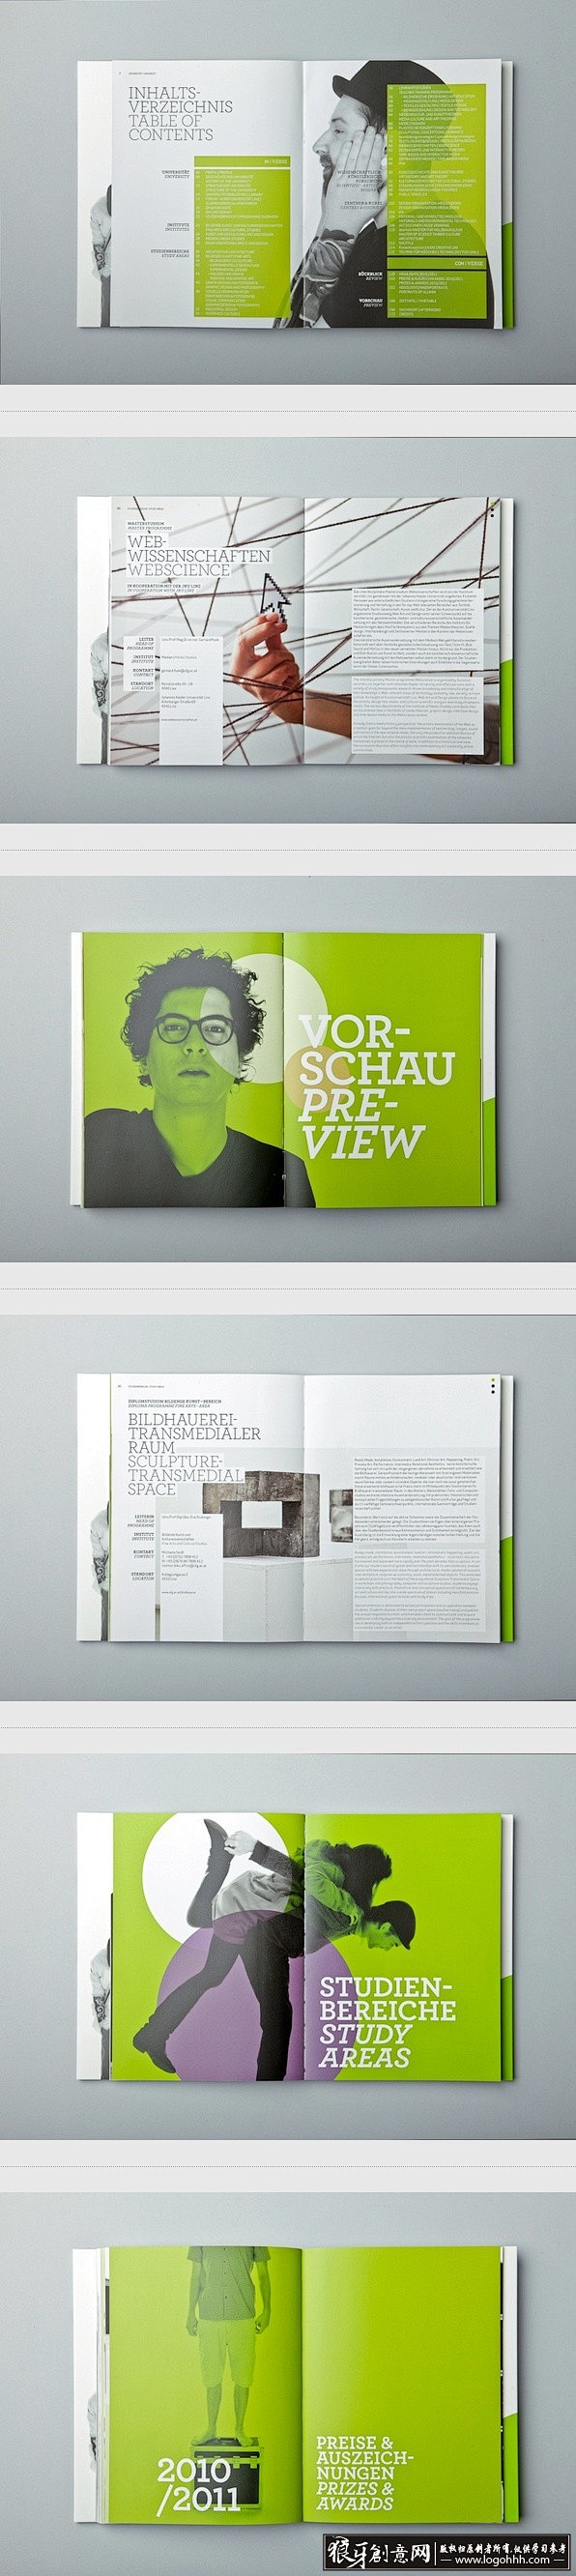 [创意画册] 绿色清新画册版式设计创意分...